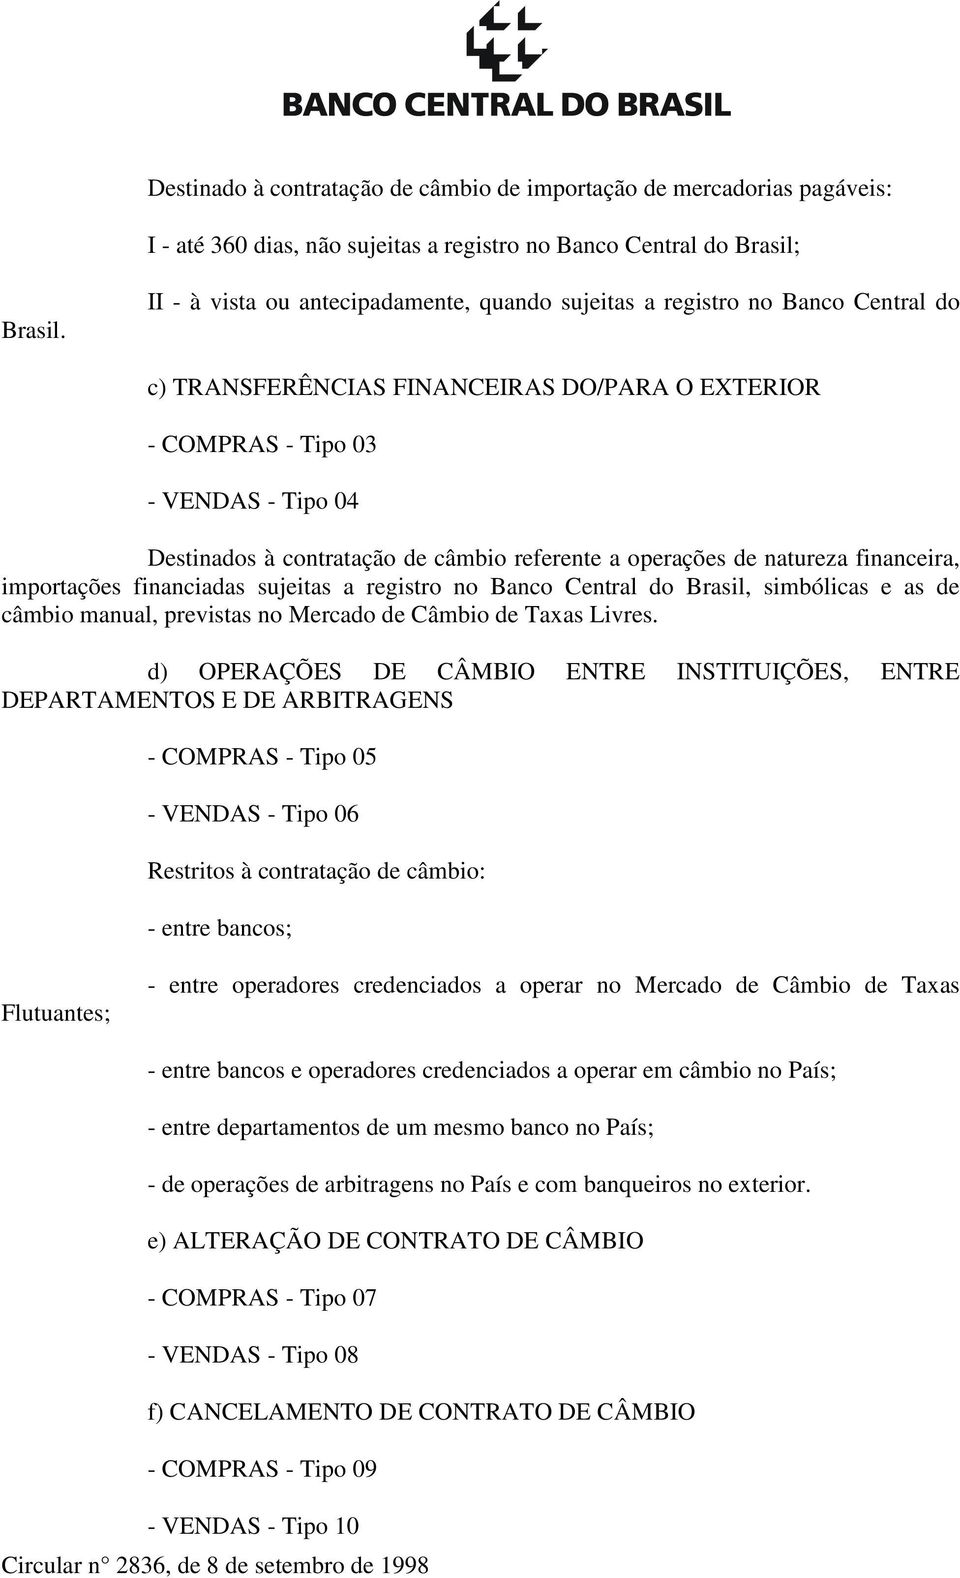 câmbio referente a operações de natureza financeira, importações financiadas sujeitas a registro no Banco Central do Brasil, simbólicas e as de câmbio manual, previstas no Mercado de Câmbio de Taxas